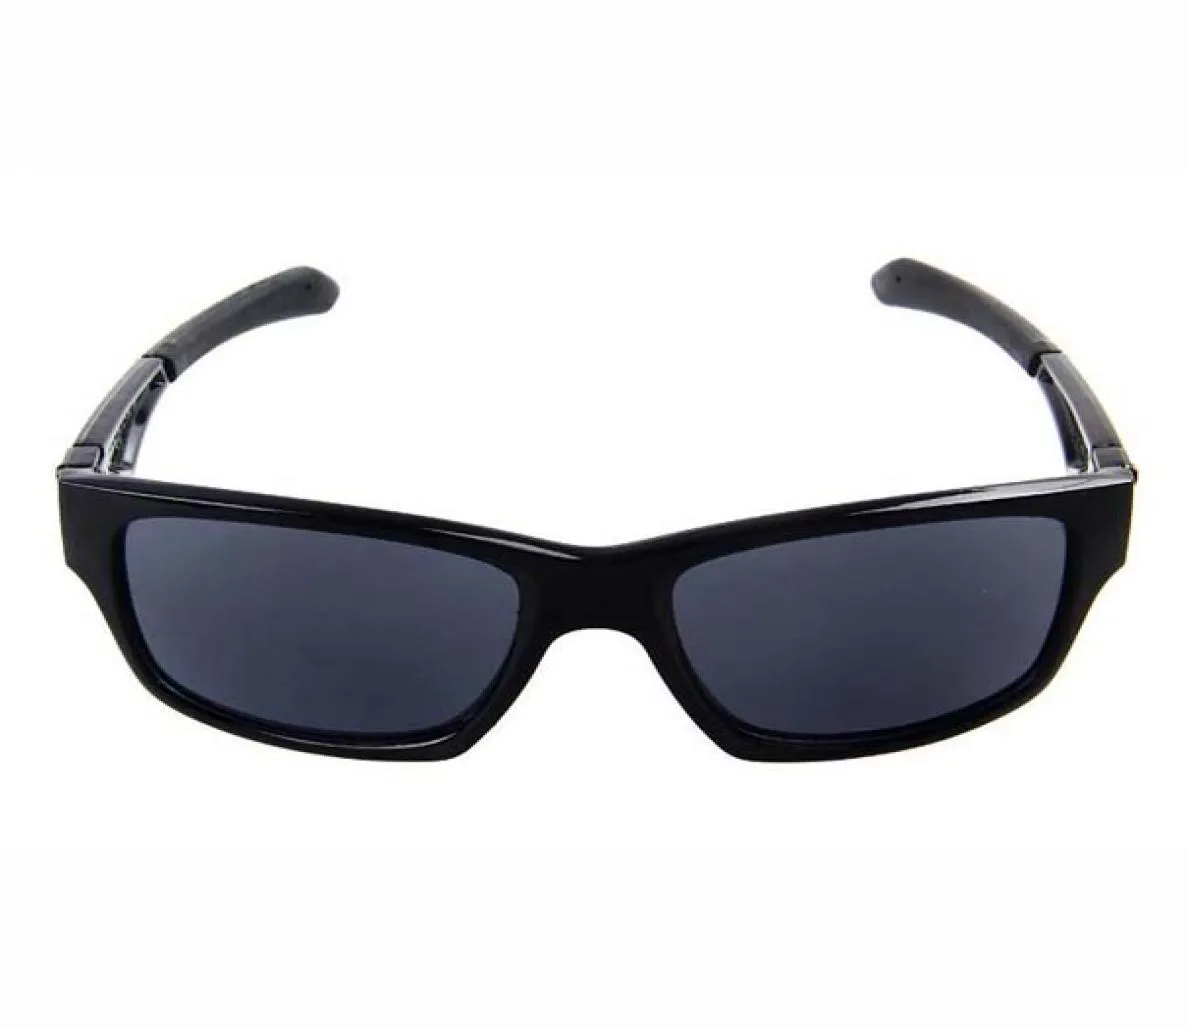 MATHE MEN SQUASS SUNGLESSES LIFE VIDO Designer de estilo de vida Mulheres Óculos Esportes UV400 Sun Glasses 4J2p com casos3518058